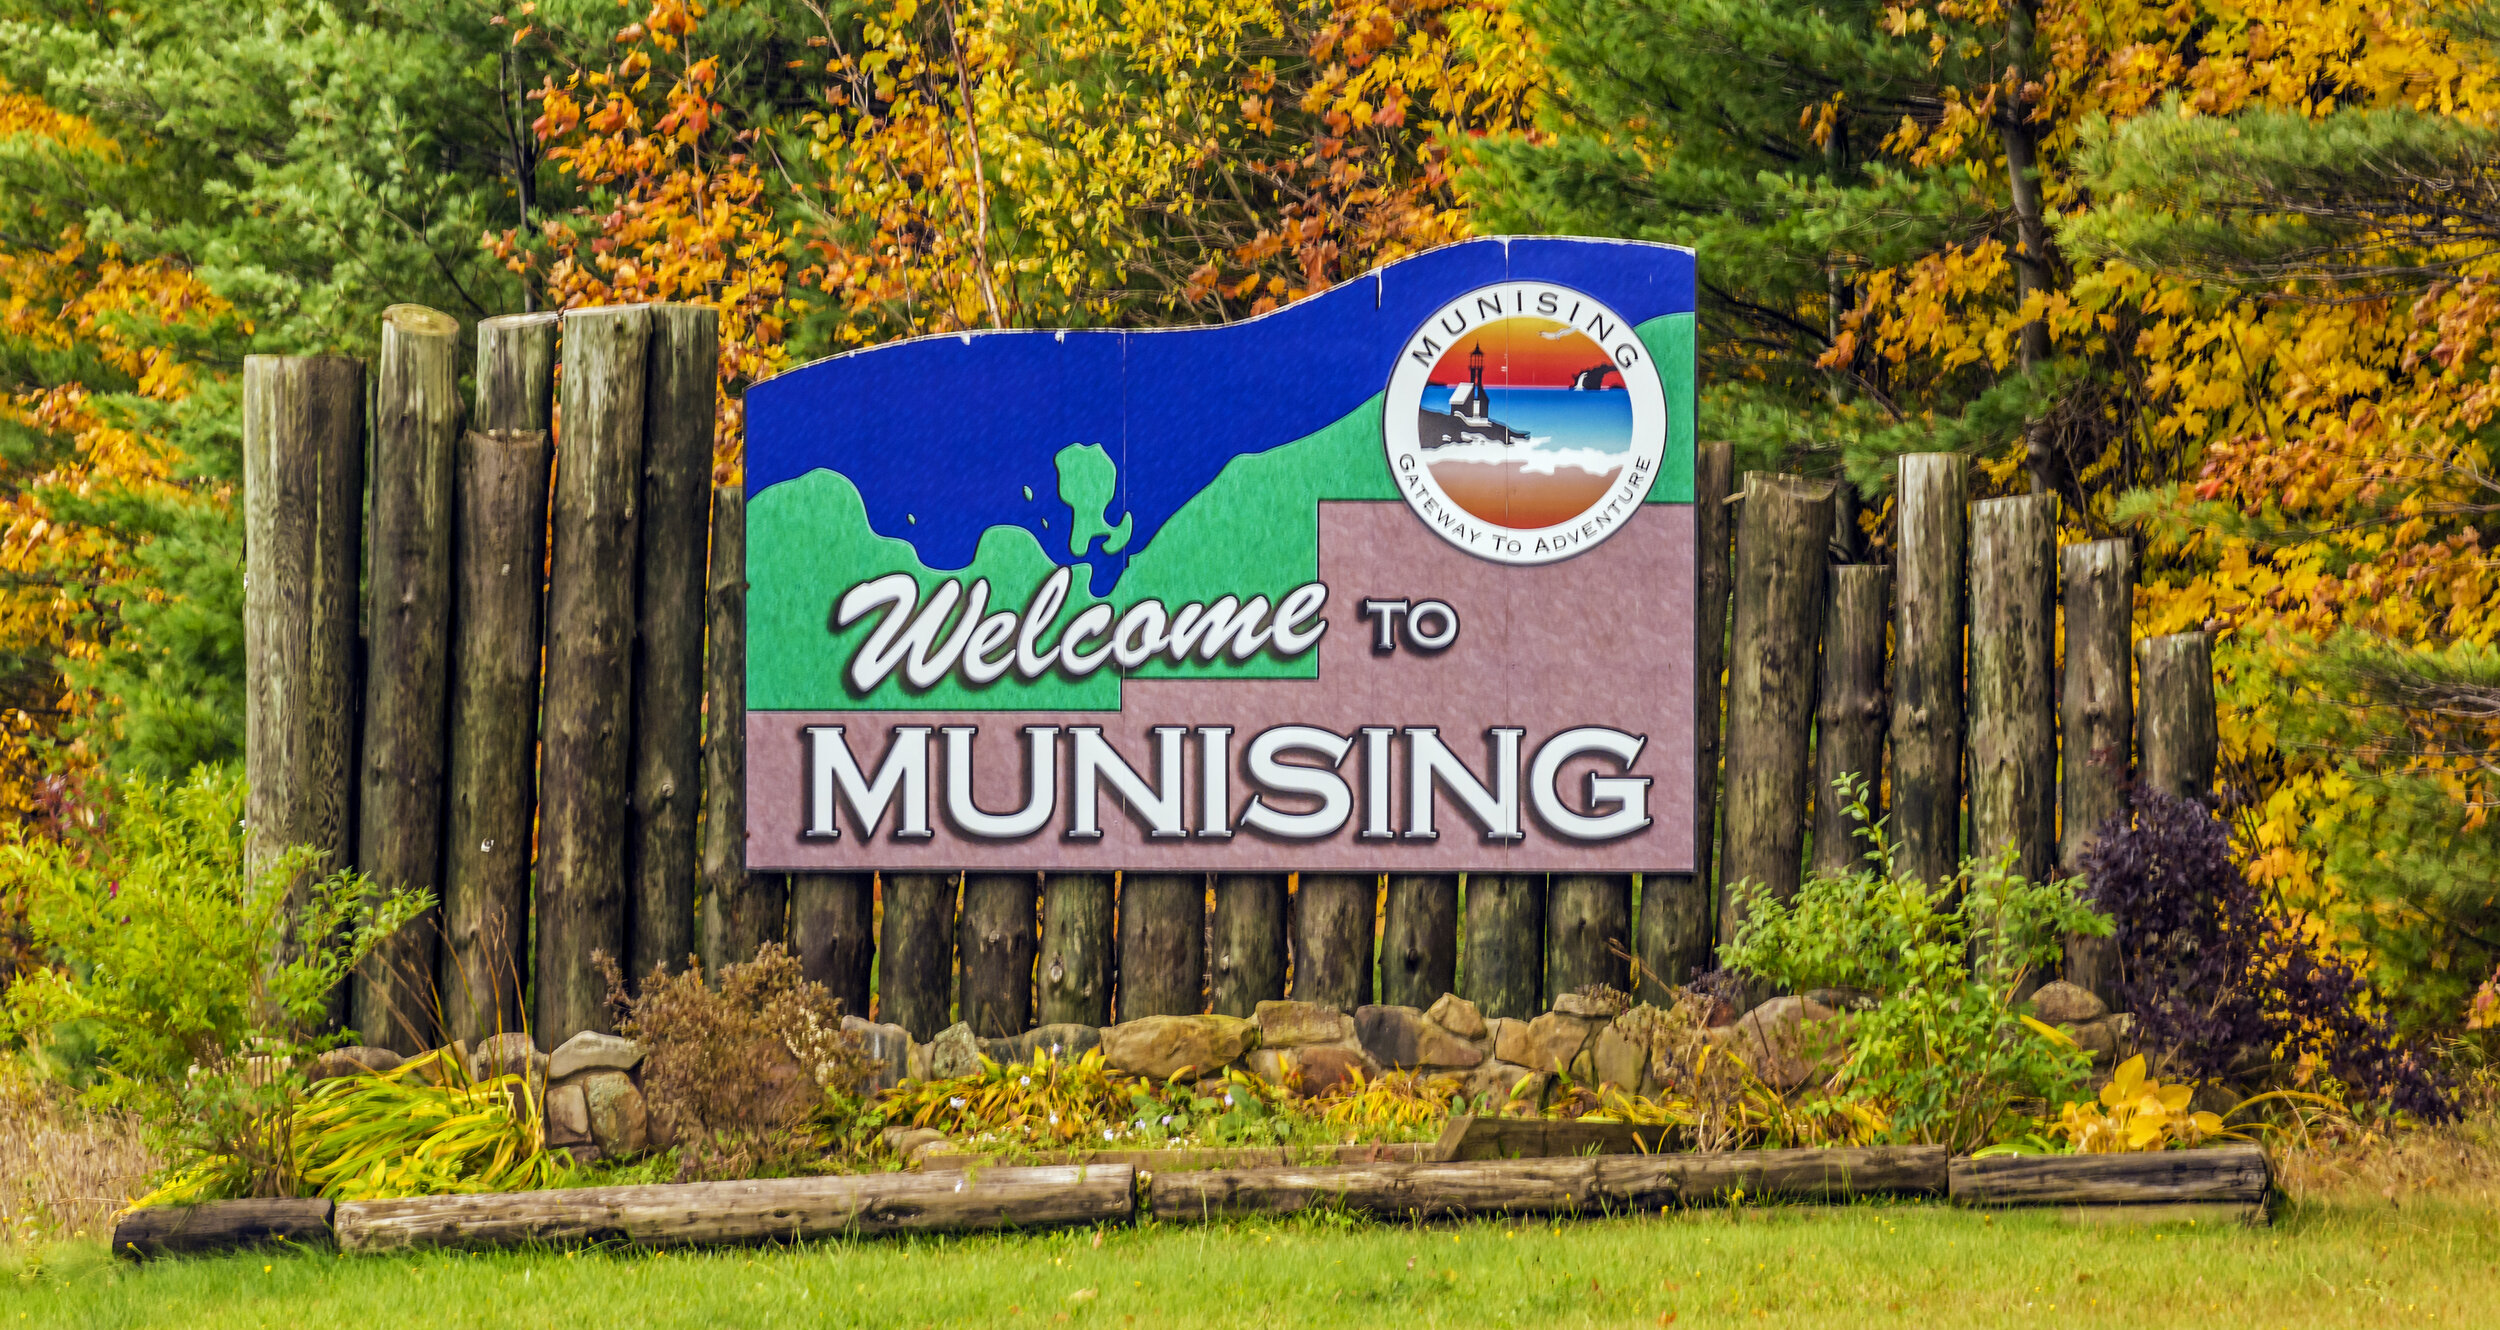  Welcome to Munising, Michigan 